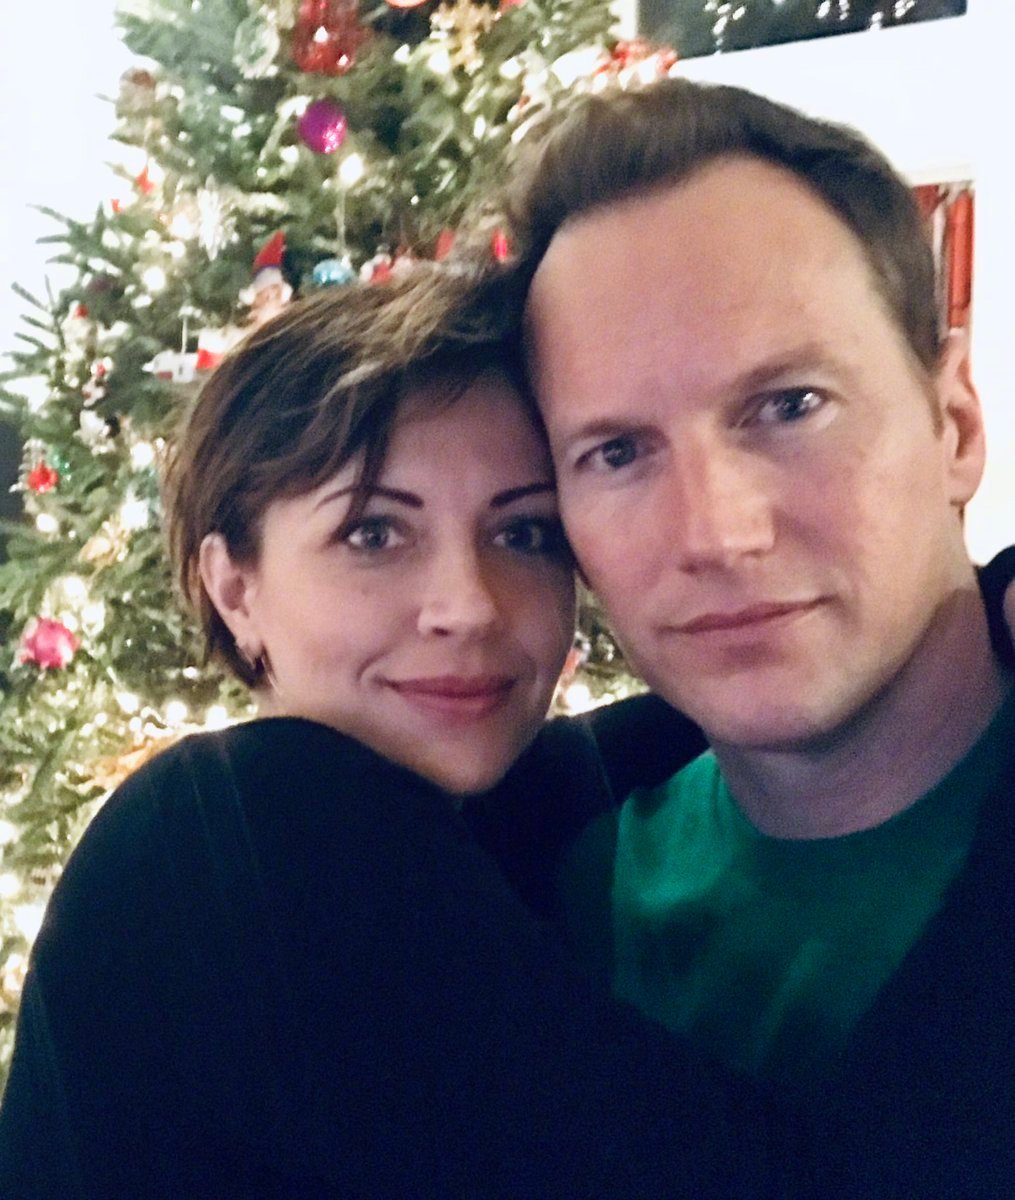 正值圣诞节,帕特里克·威尔森也在社交媒体上发了一张照片秀恩爱,是他